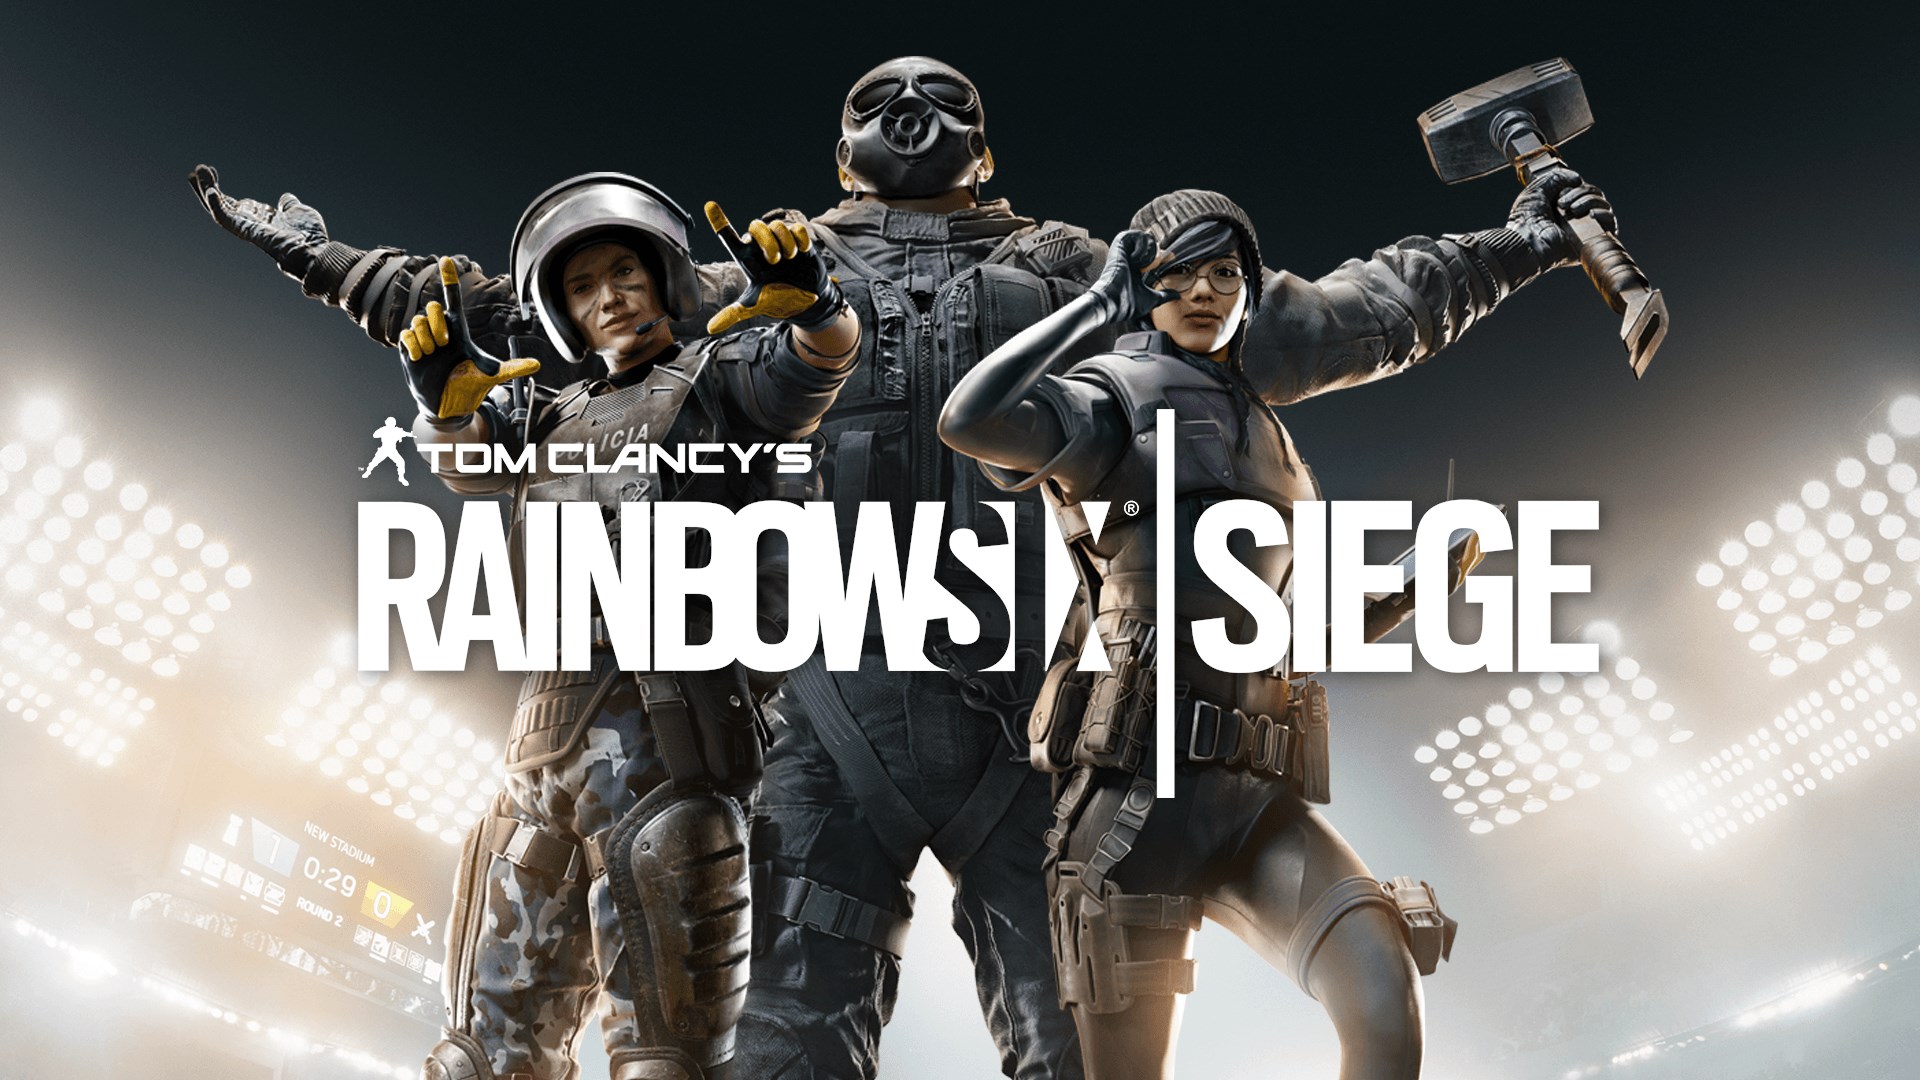 jaquette du jeu vidéo Tom Clancy's Rainbow Six: Siege